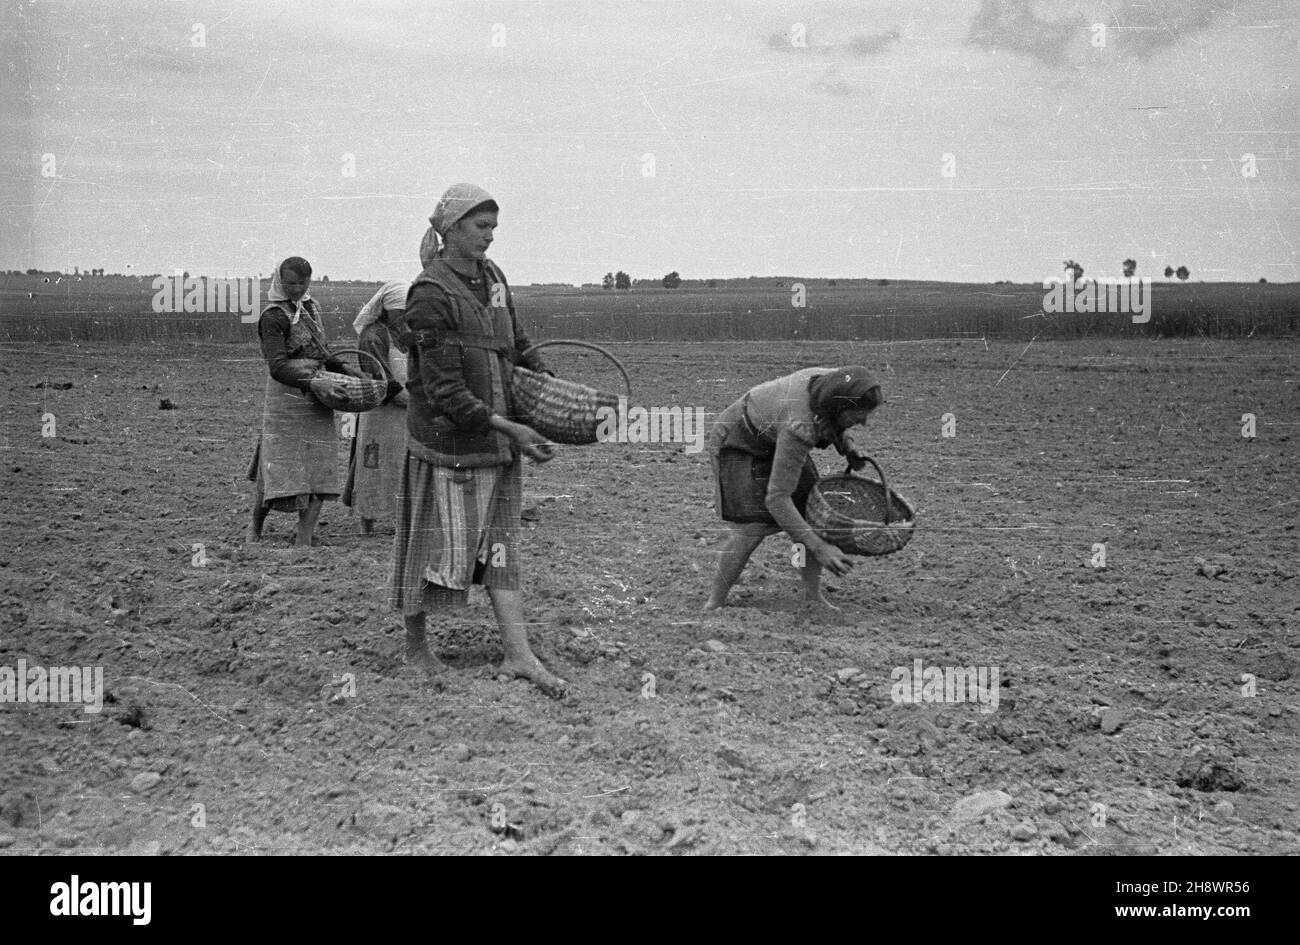 Polska, 1946. Wiosenne sadzenie ziemniaków. gr  PAP    Dok³adny miesi¹c i dzieñ wydarzenia nieustalone.      Poland, 1946. Spring potato planting.  gr  PAP Stock Photo